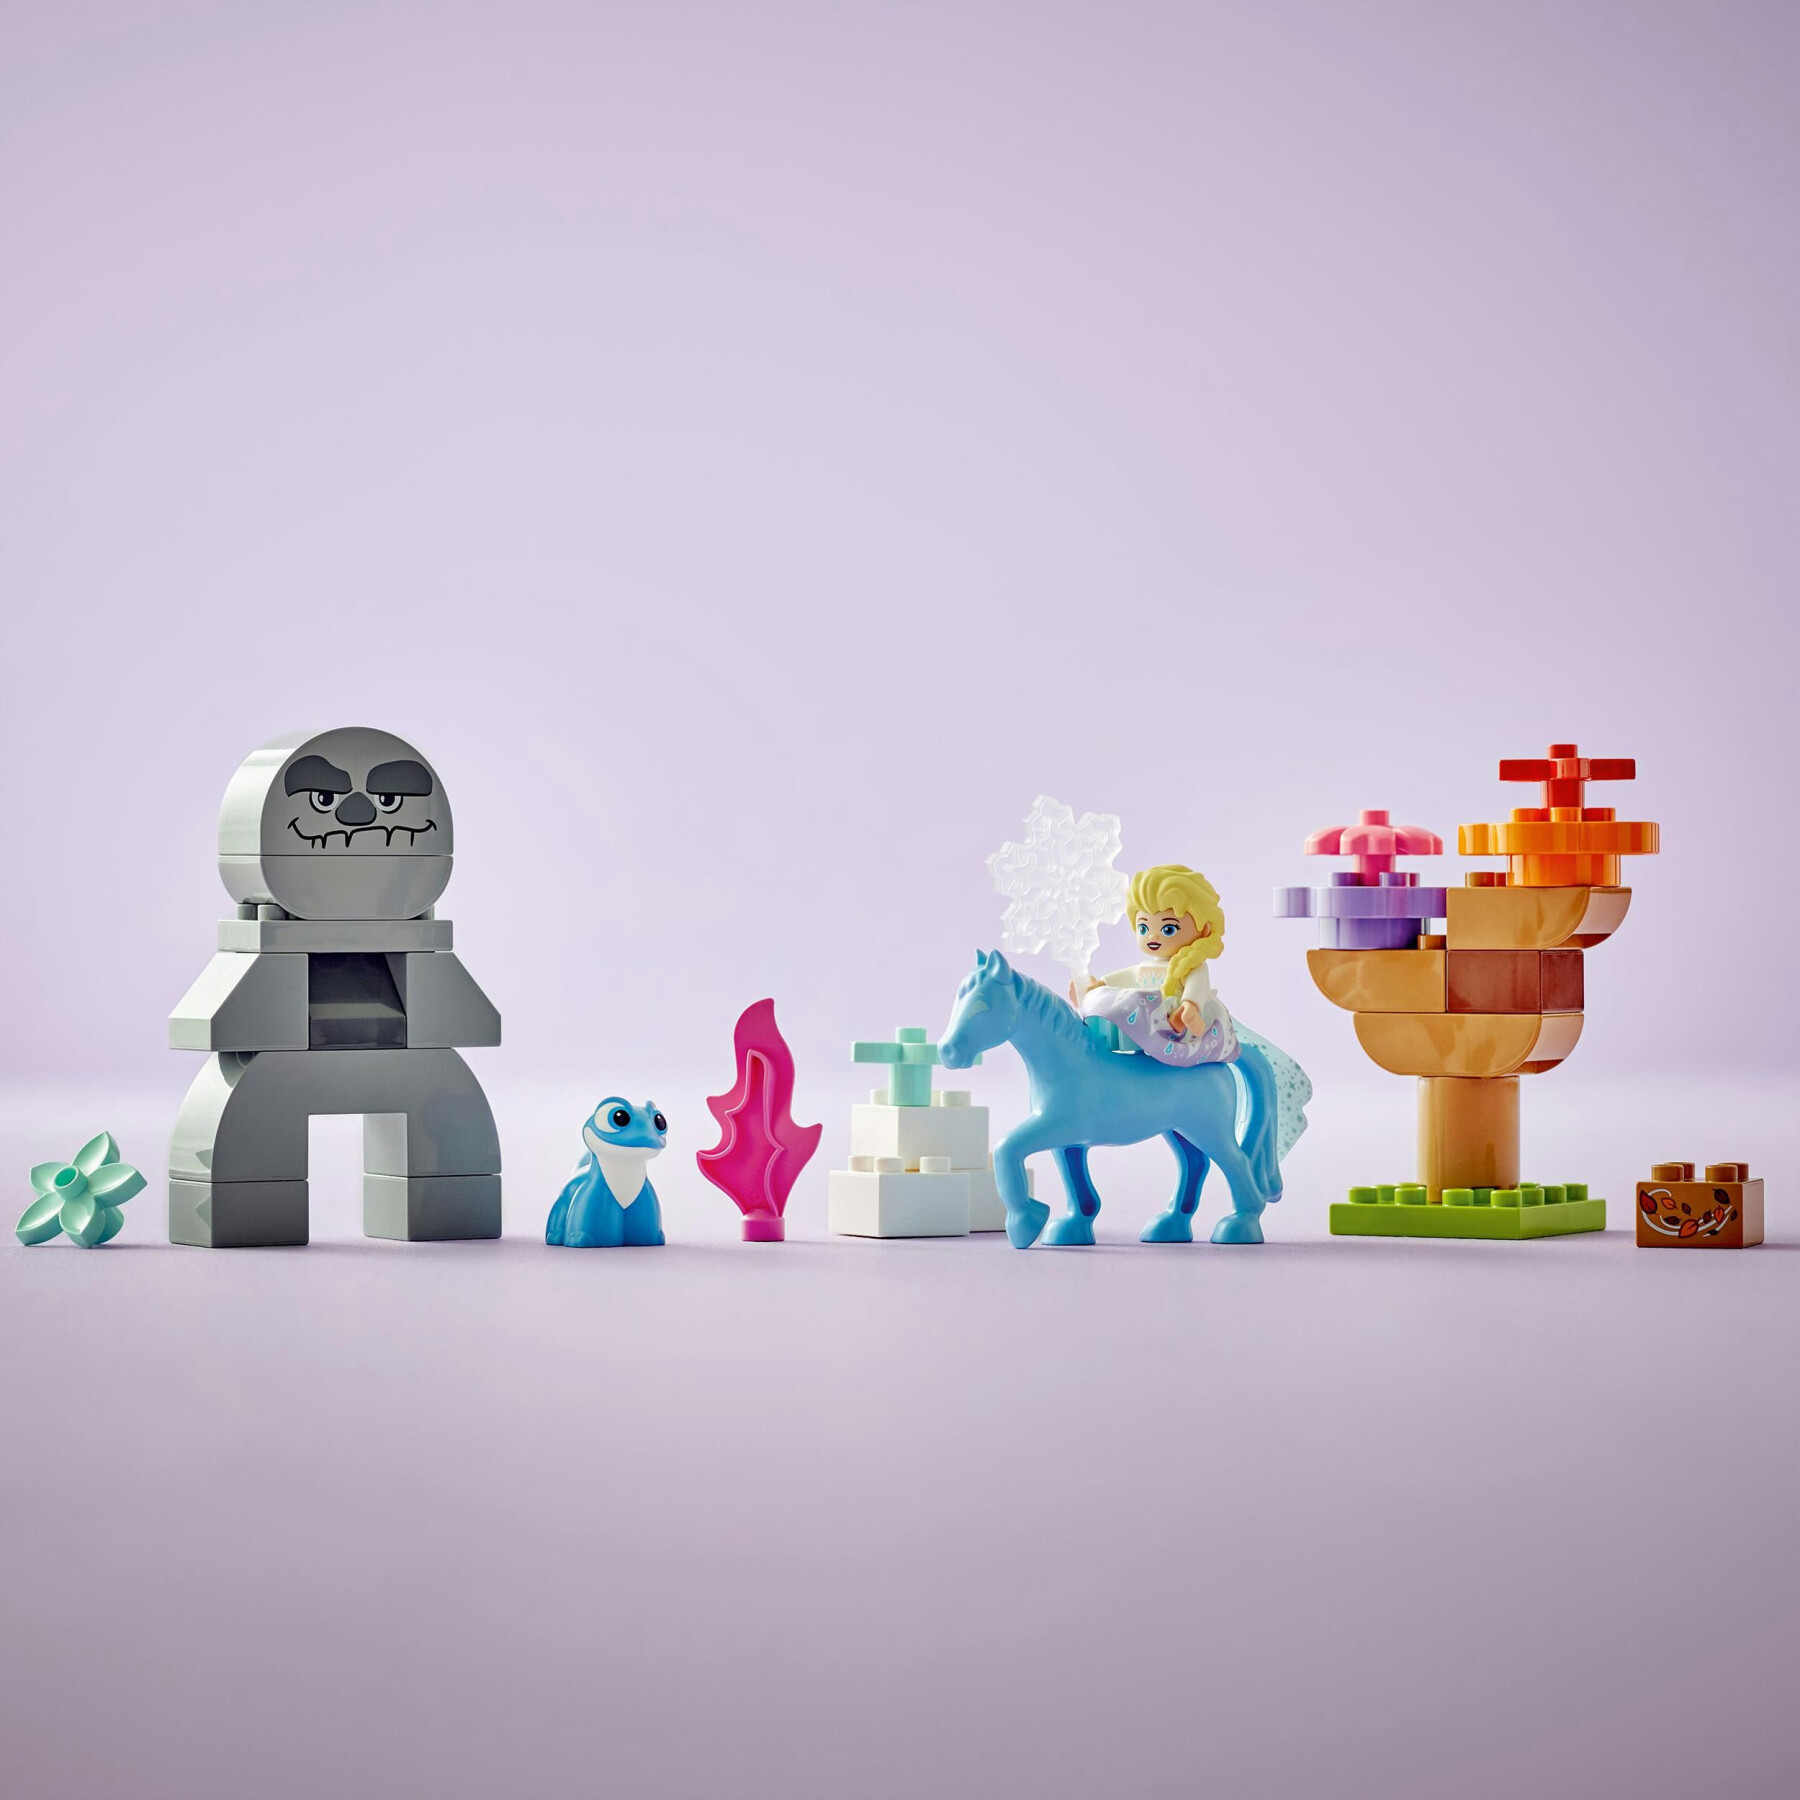 Lego duplo disney 10418 elsa e bruni nella foresta incantata, gioco per bambini 2+ con il cavallo giocattolo nokk di frozen 2 - DISNEY PRINCESS, LEGO DUPLO, Frozen